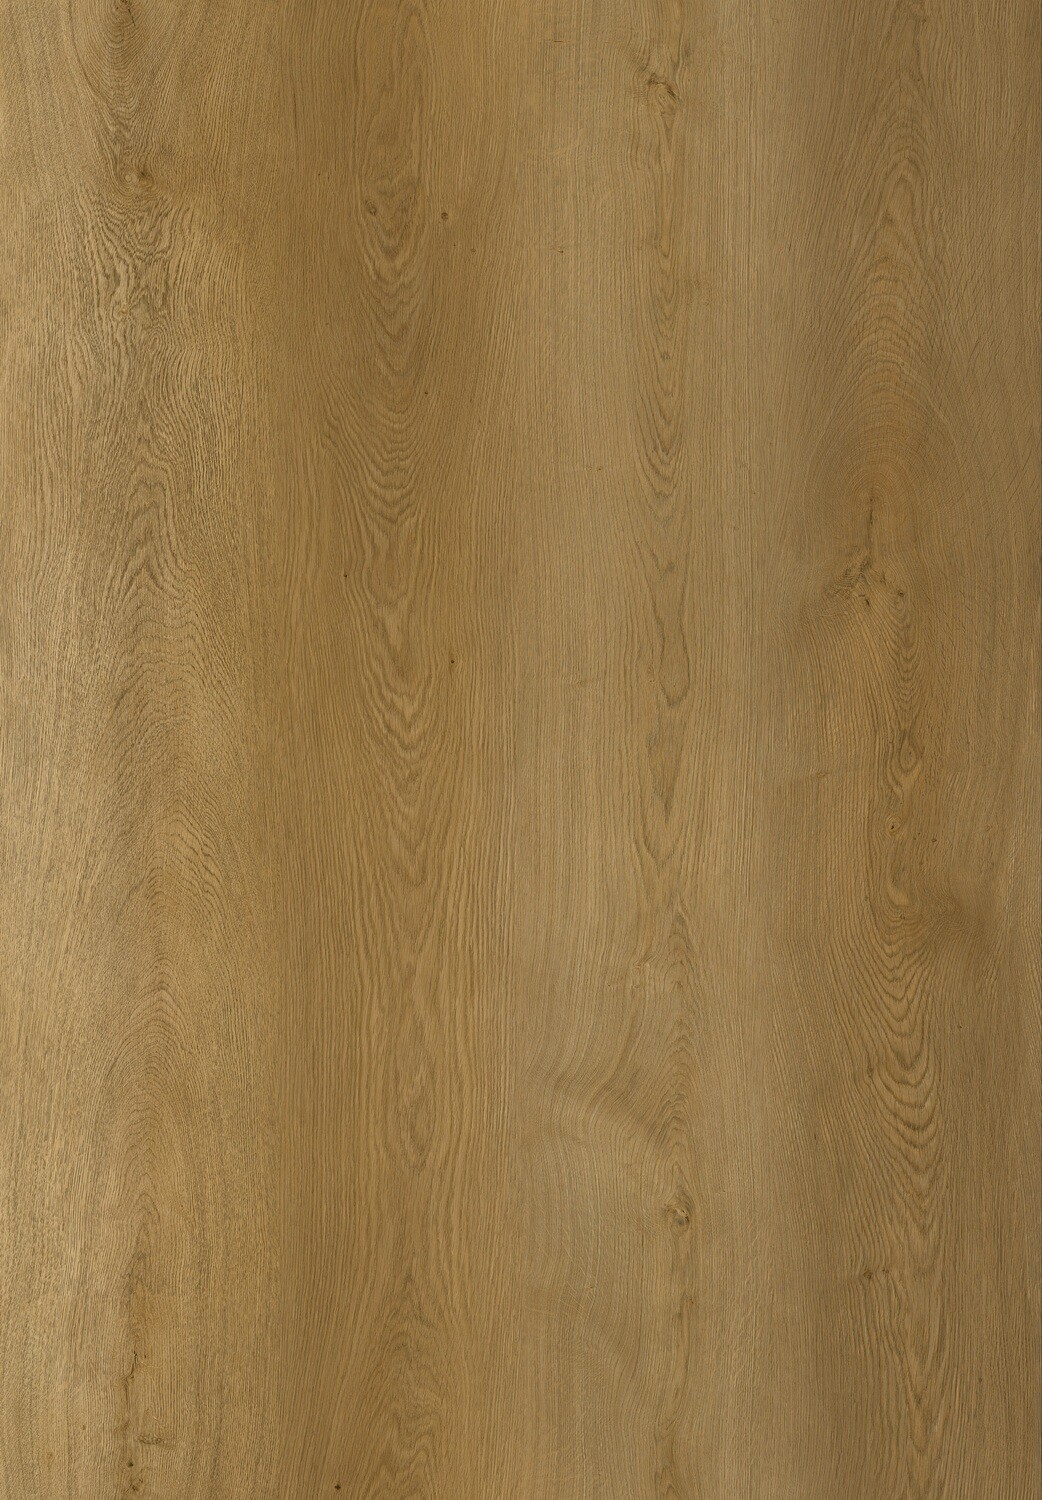 Vinylboden Natural Majestic Oak mit Trittschall 1.5mm pro 1m² Stärke 8mm x 220mm x 1840mm